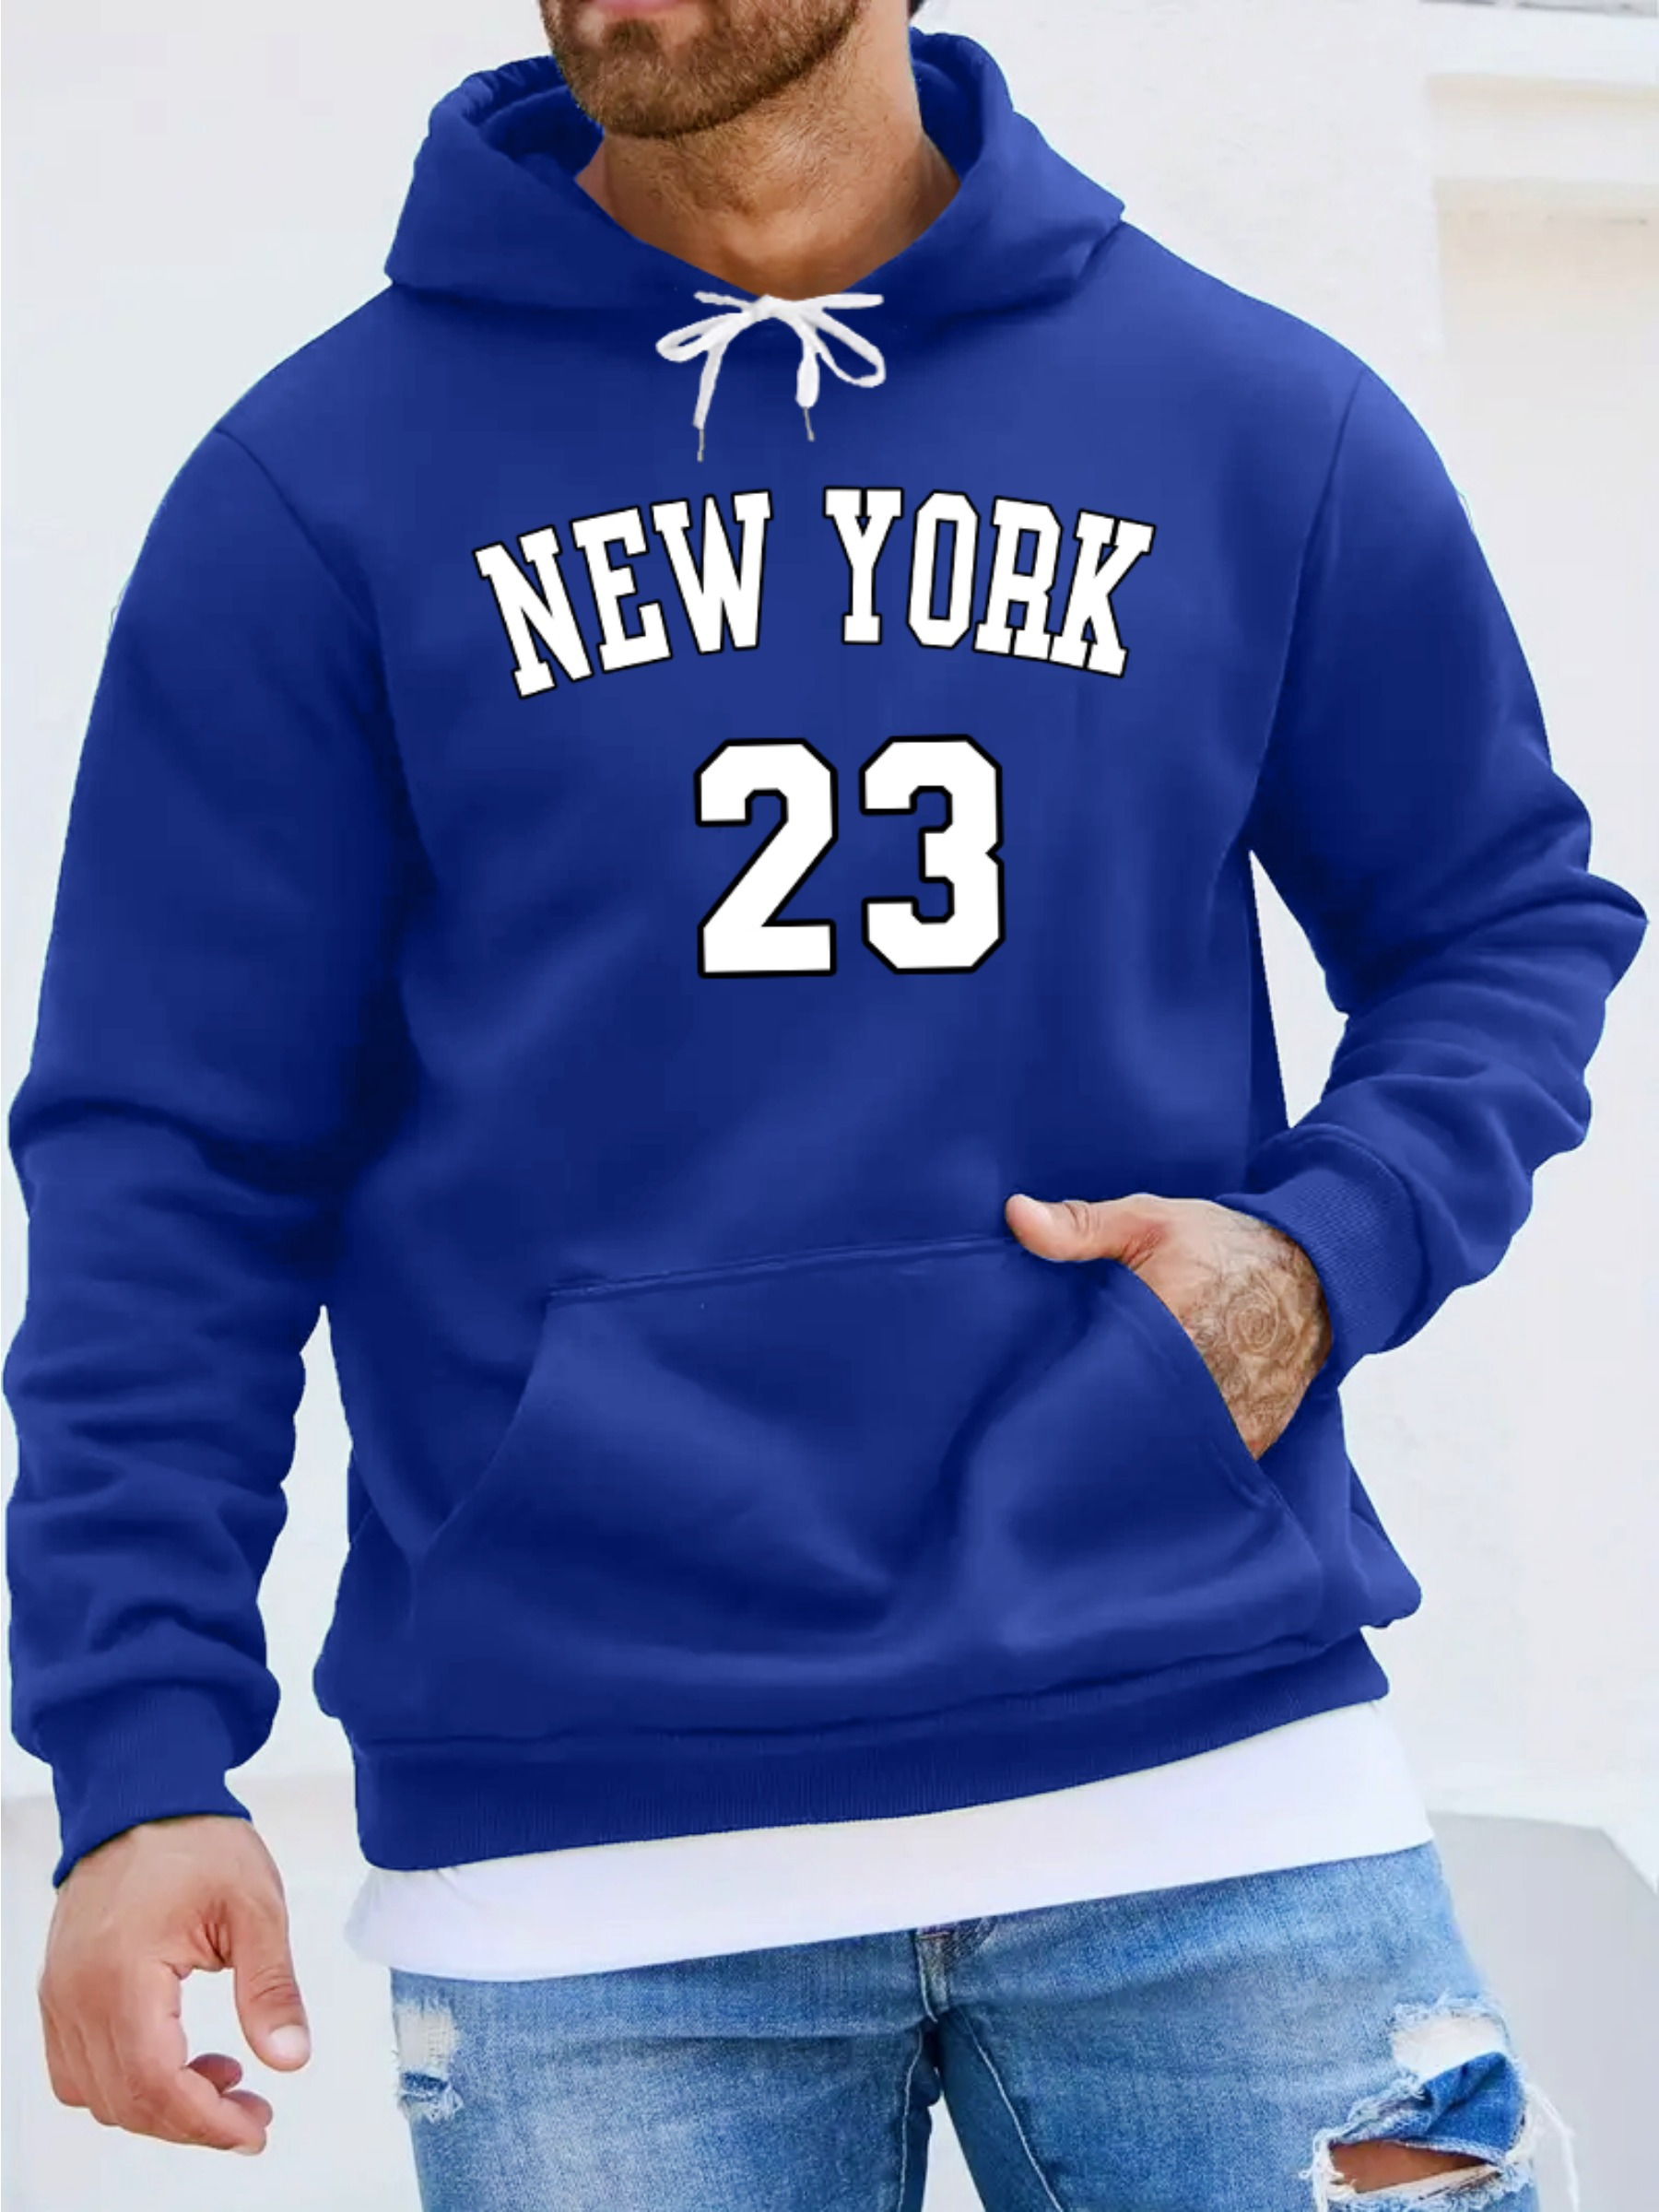 New York Mens Hoodies Pullover Print Hooded Jacket Long Sleeve